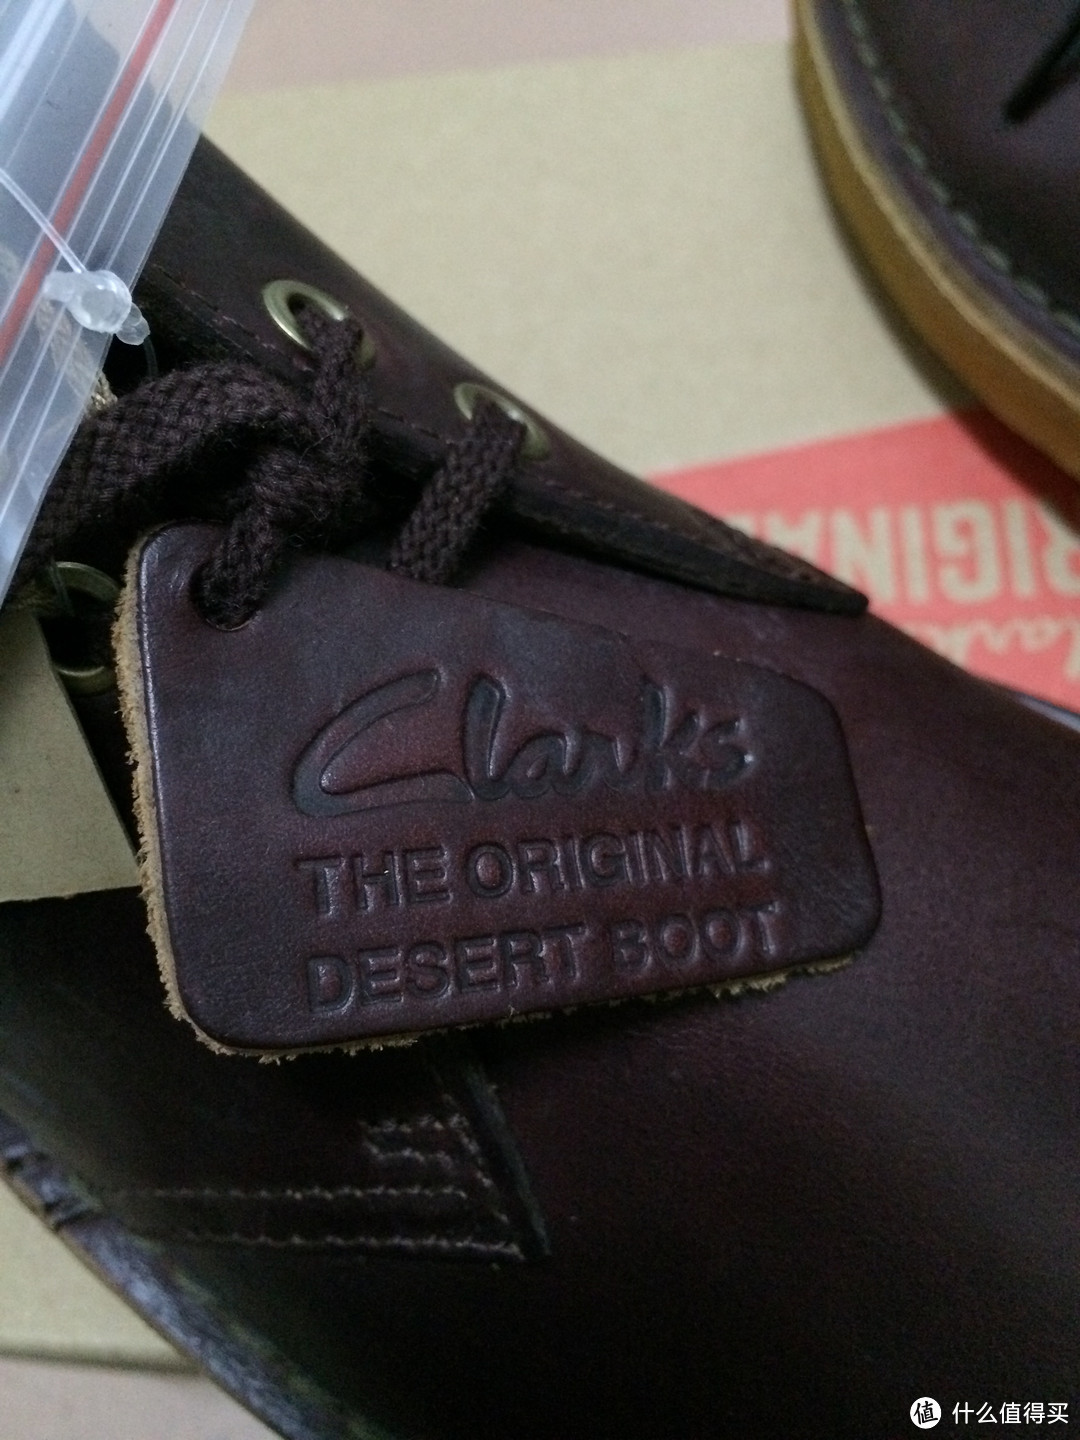 忘不了的那一抹红——Clarks originals X Horween 沙漠靴 简单开箱